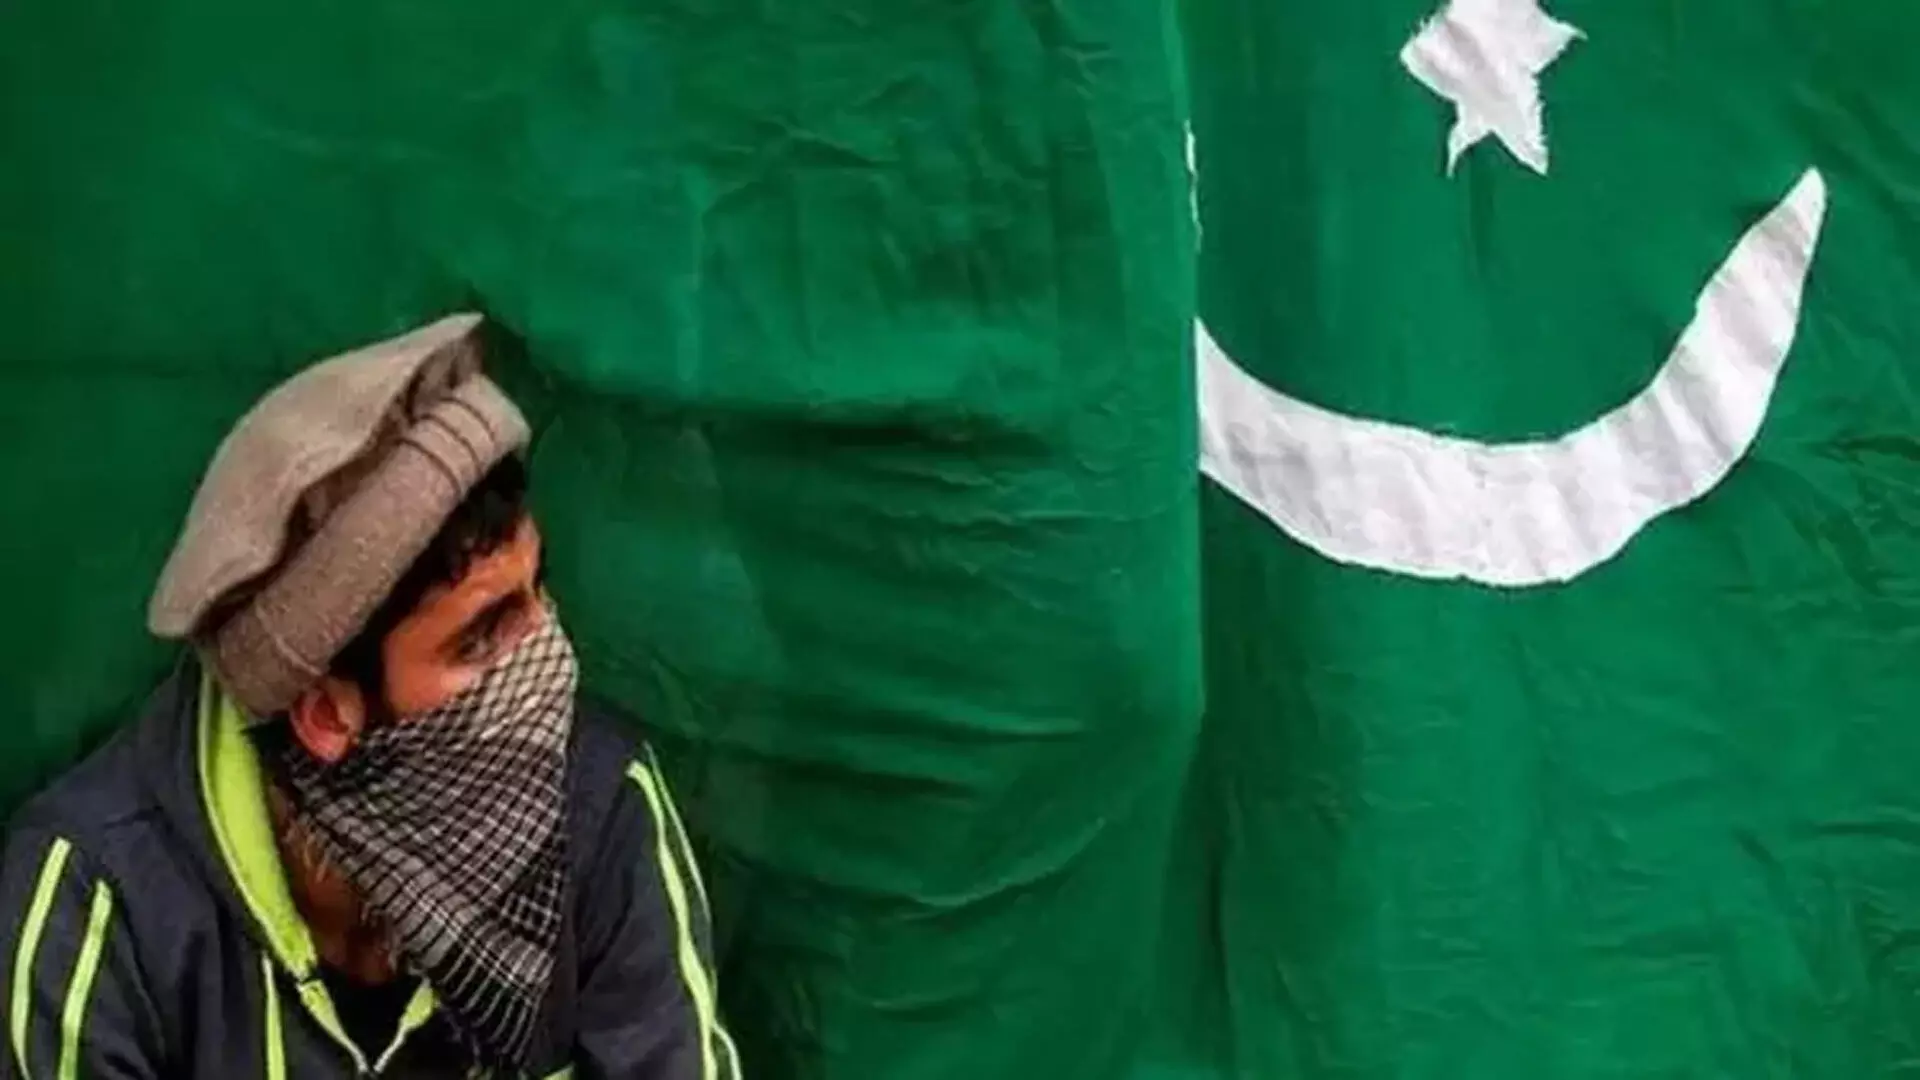 संयुक्त राष्ट्र के विशेषज्ञ पाकिस्तान में जबरन विवाह, धर्म परिवर्तन की निंदा की